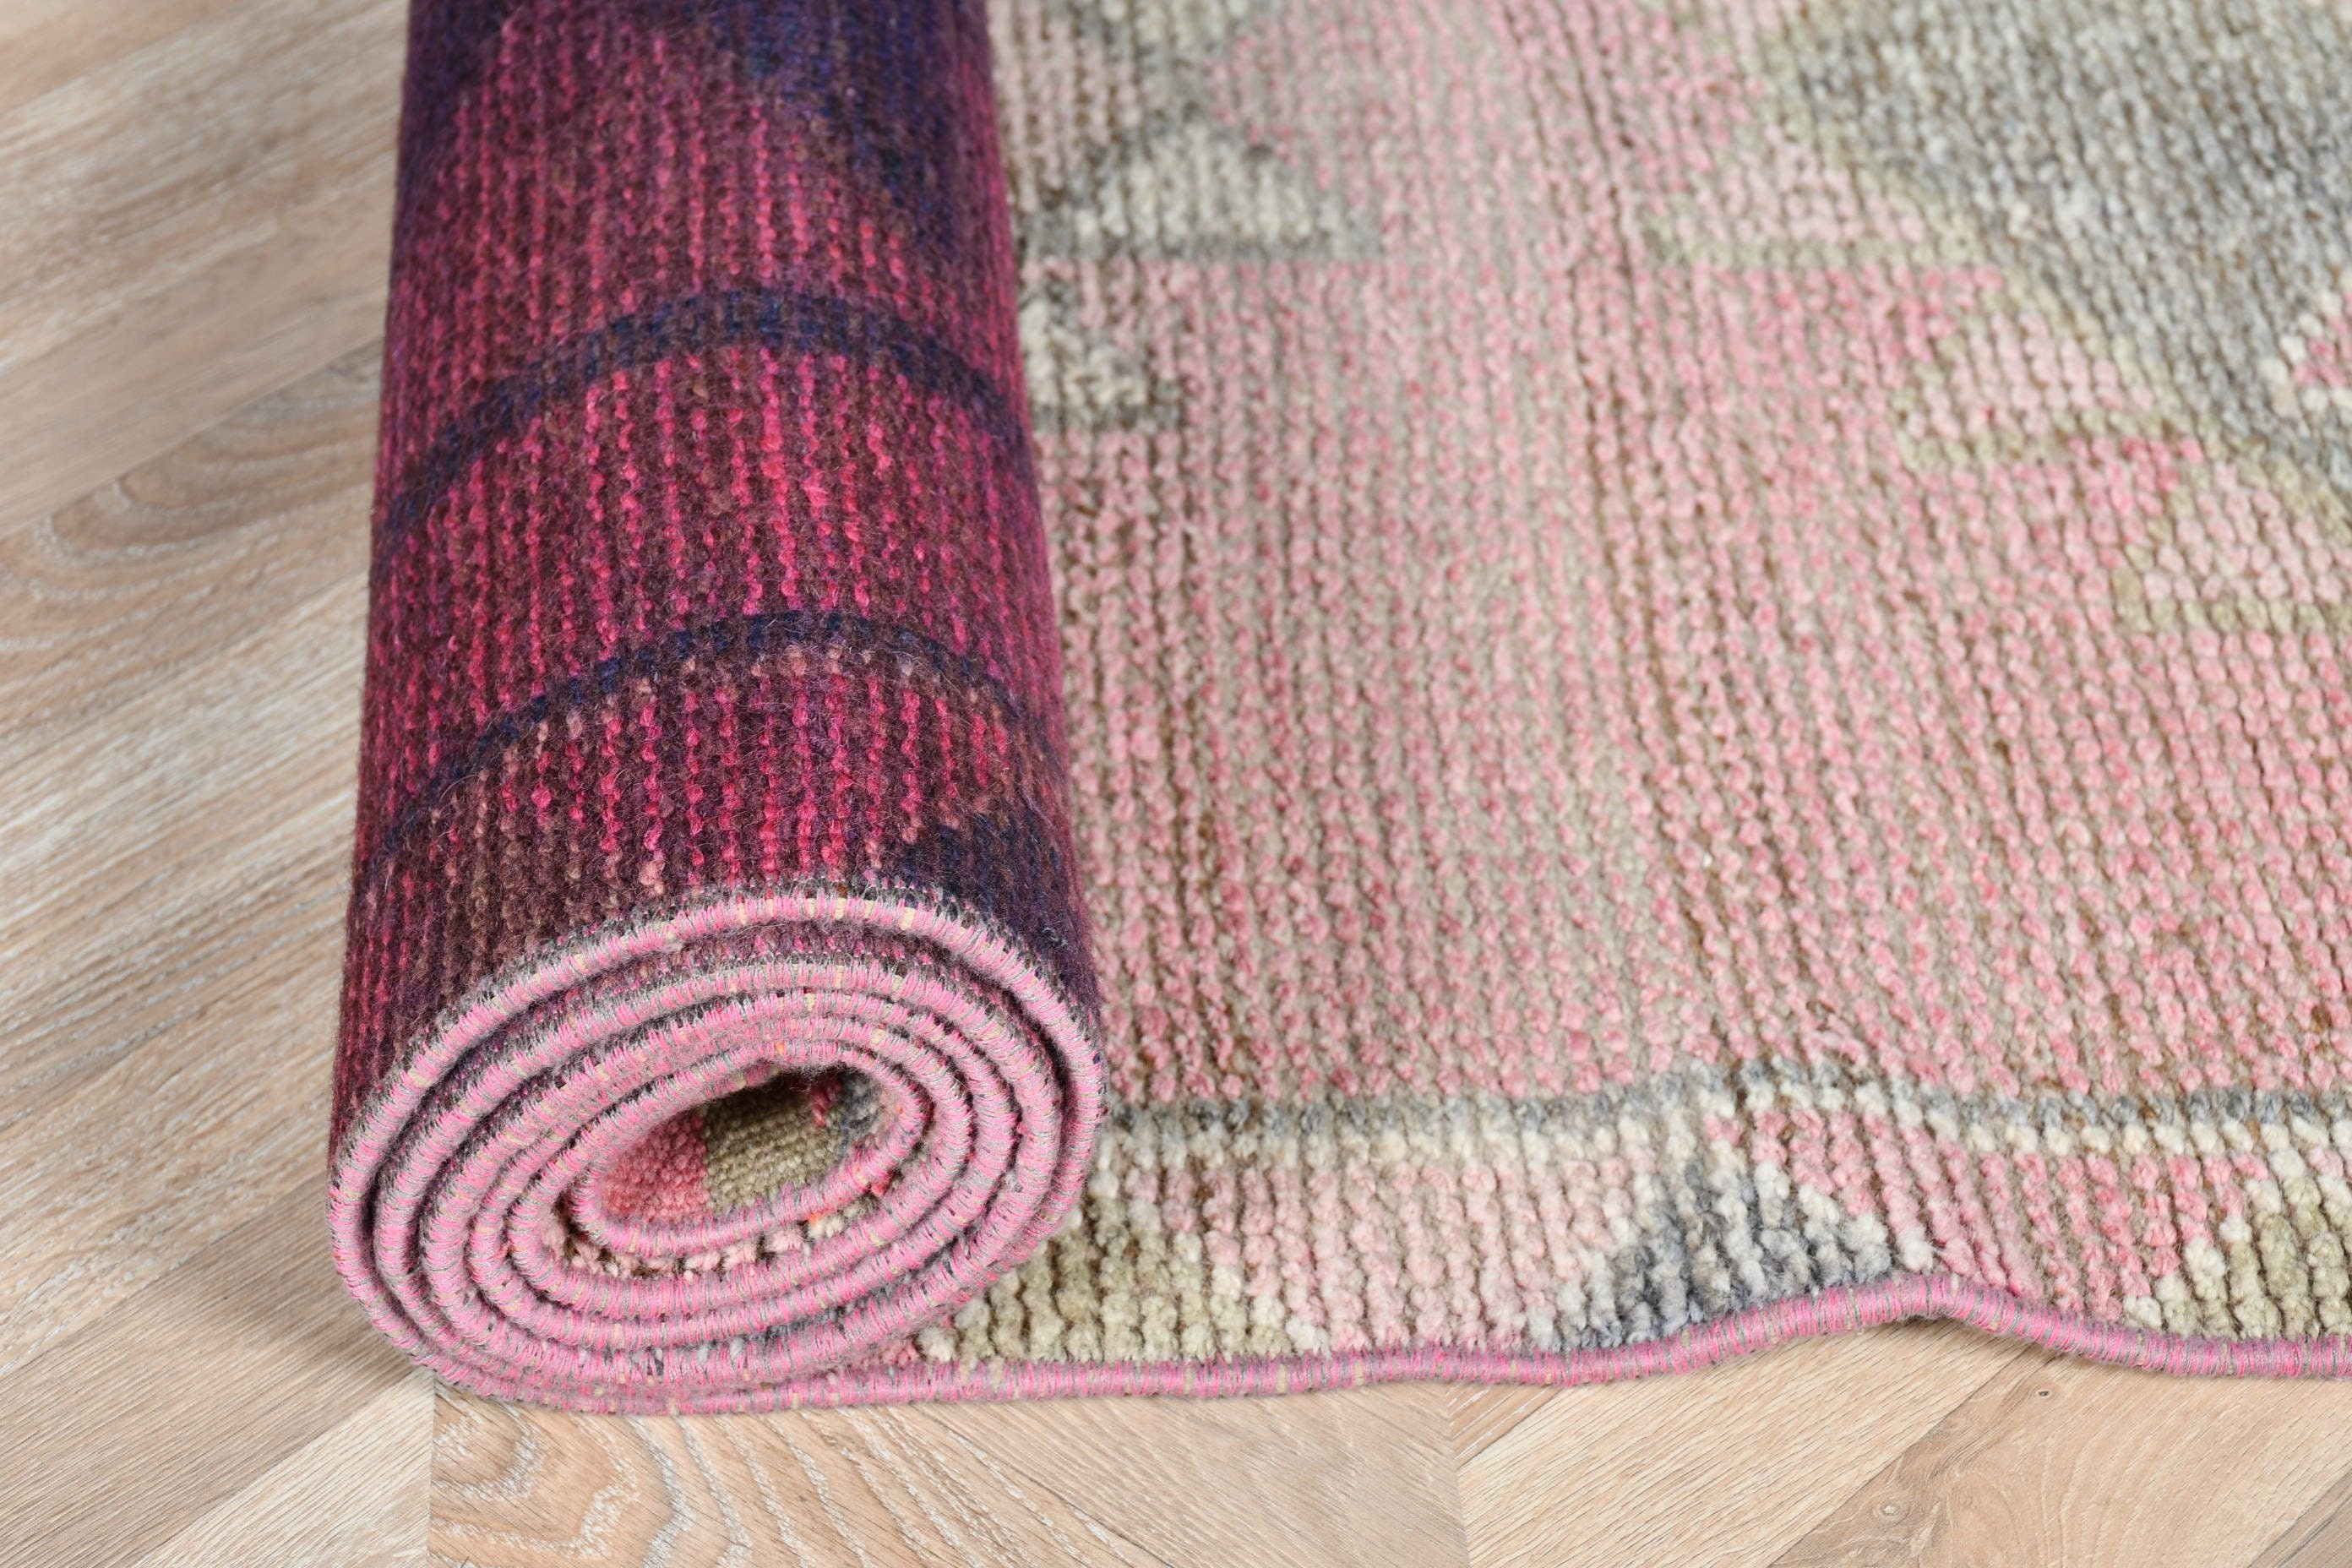 Pink Oriental Rug, Hallway Rugs, Wool Rug, Turkish Rug, Rugs for Kitchen, 2.9x11.4 ft Runner Rug, Stair Rug, Home Decor Rug, Vintage Rugs